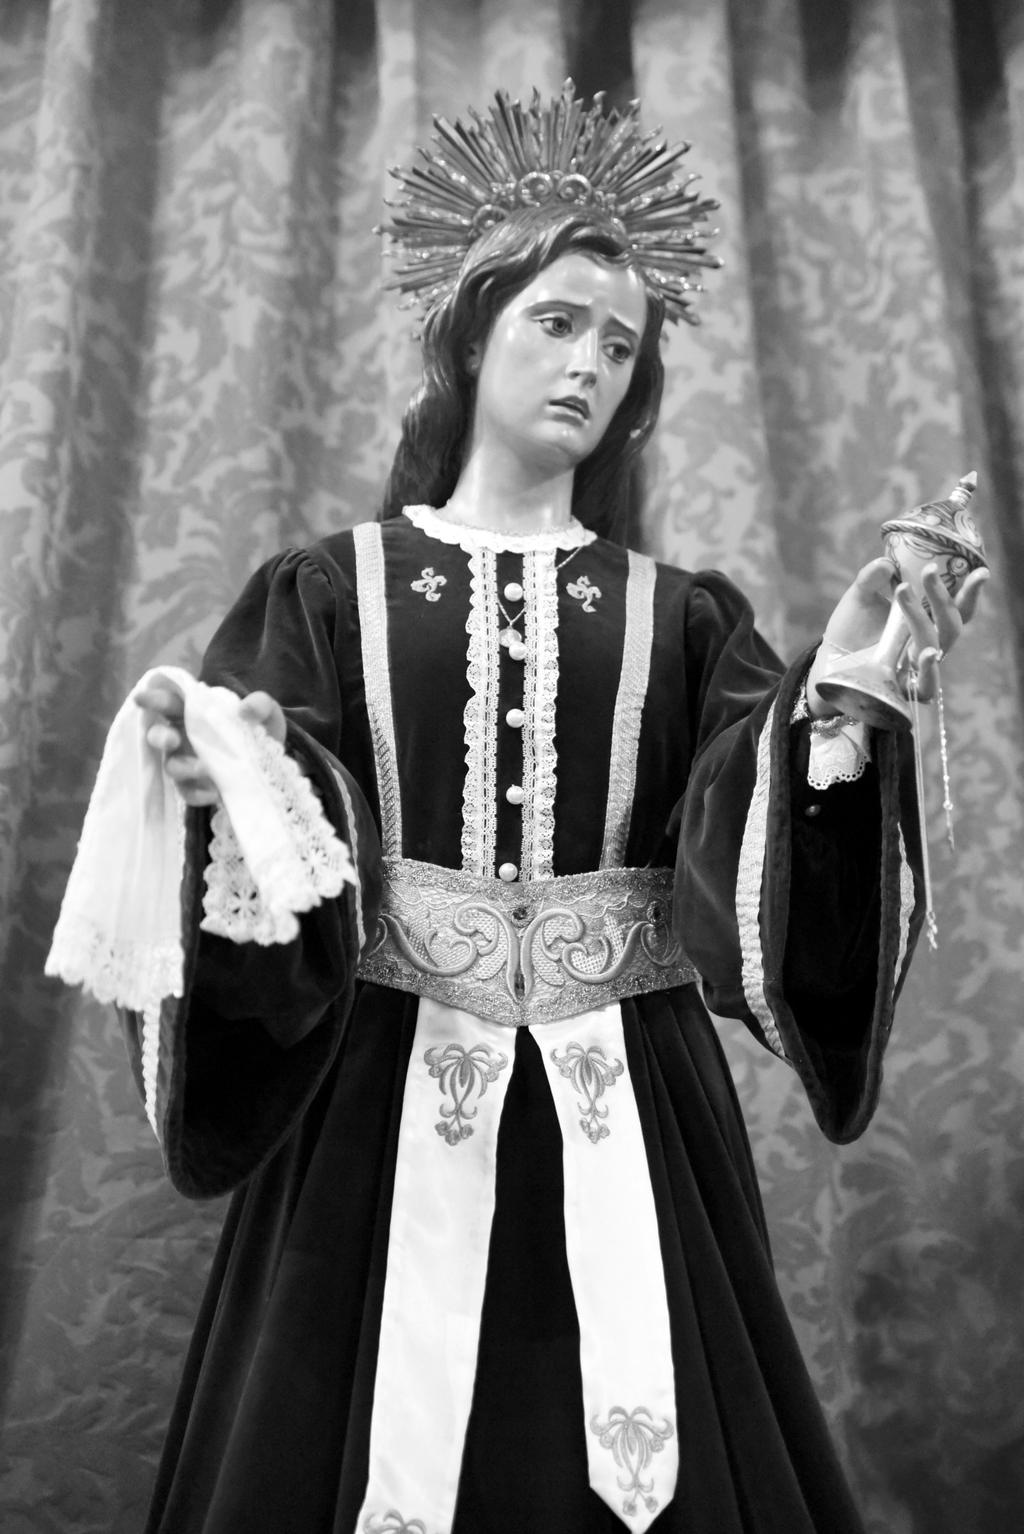 Restauración y conservación de la imagen de María Magdalena de la parroquia de San Pedro Apóstol. María Magdalena, es una imagen de vestir de medidas 163cm de altura.